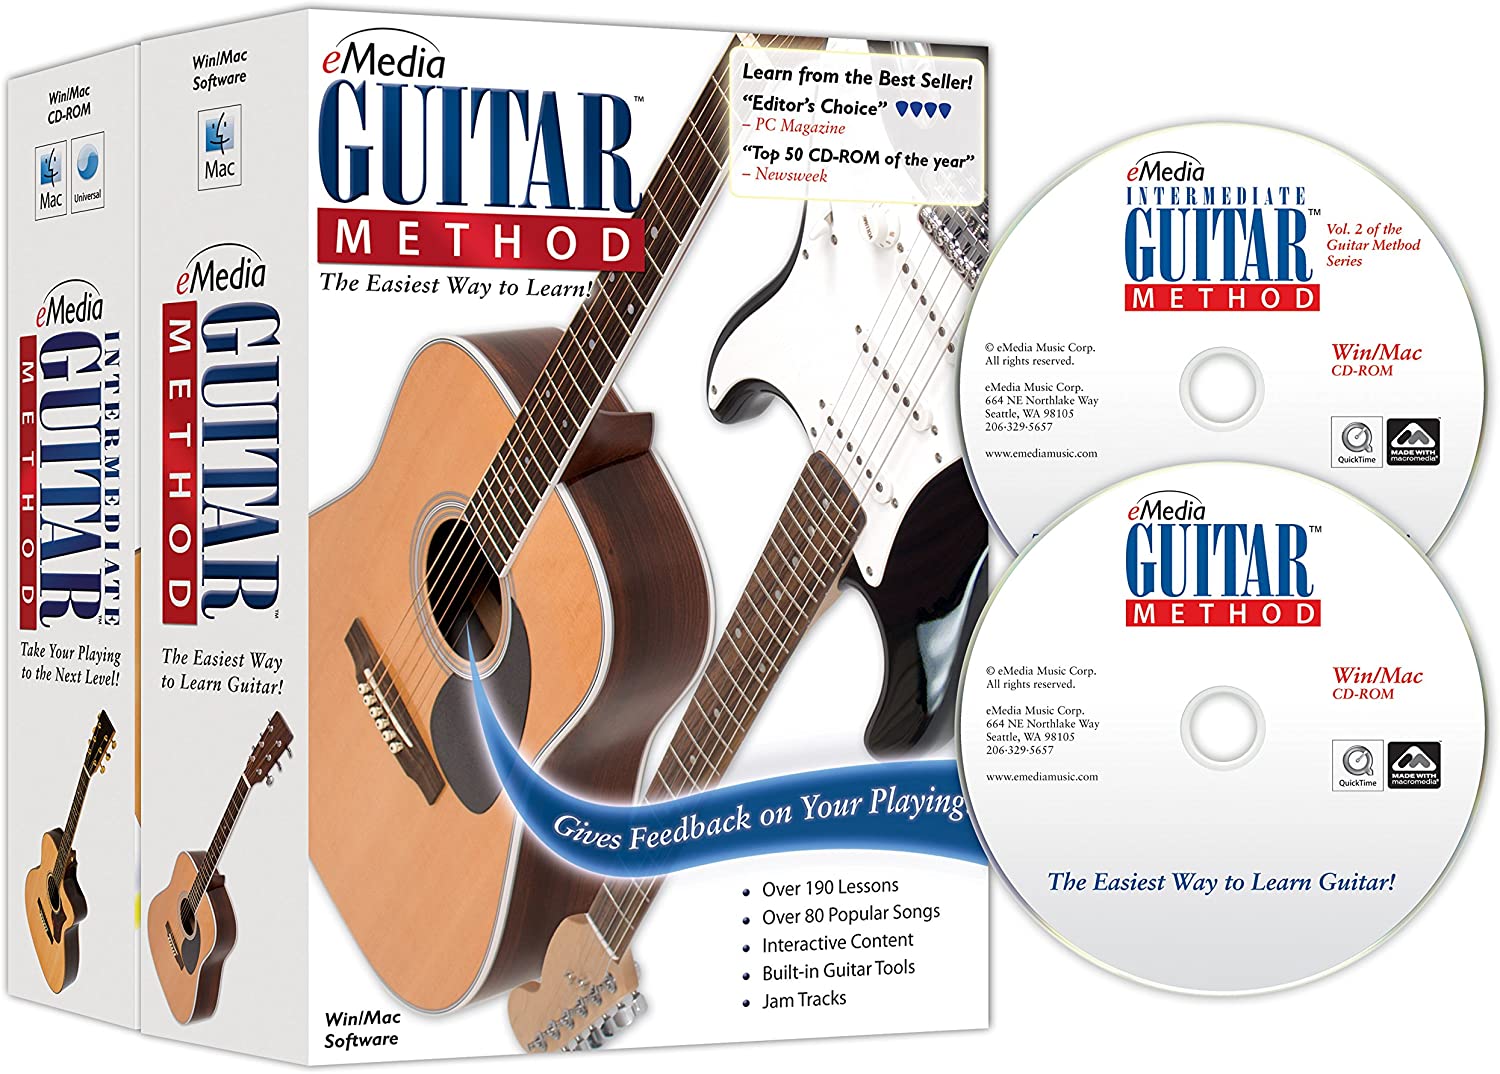 eMedia Guitar Method Deluxe